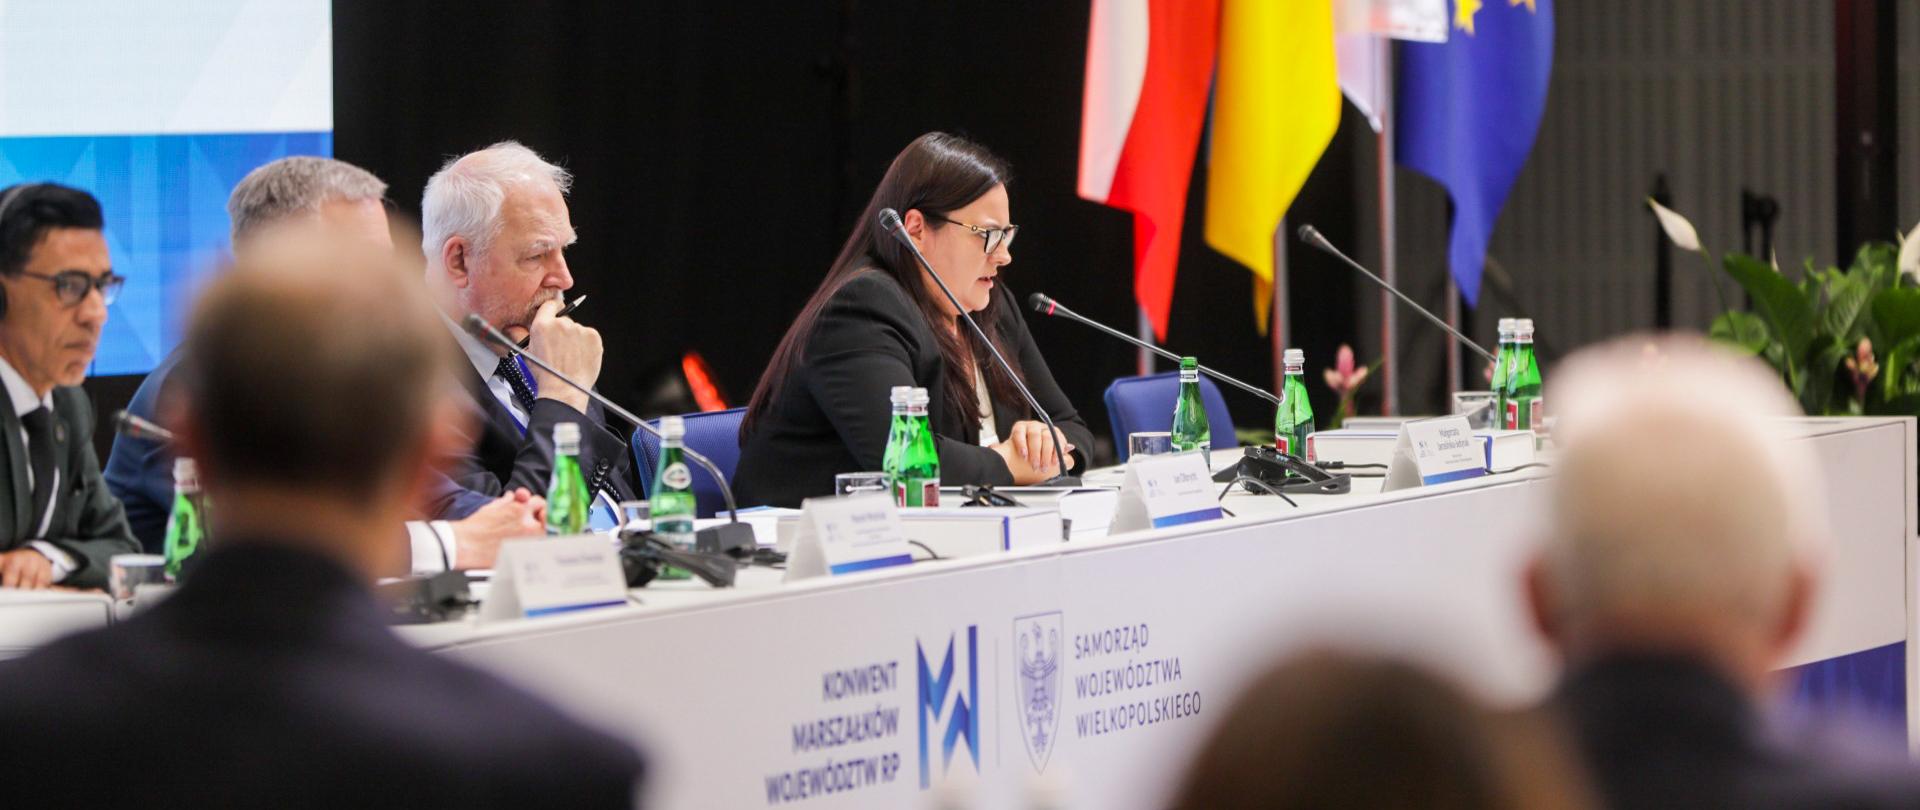 W sali obrad przy stole siedzi grupa osób. Pierwsza z prawej wiceminister Małgorzata Jarosińska-Jedynak. Za plecami osób duży ekran. Obok flagi.